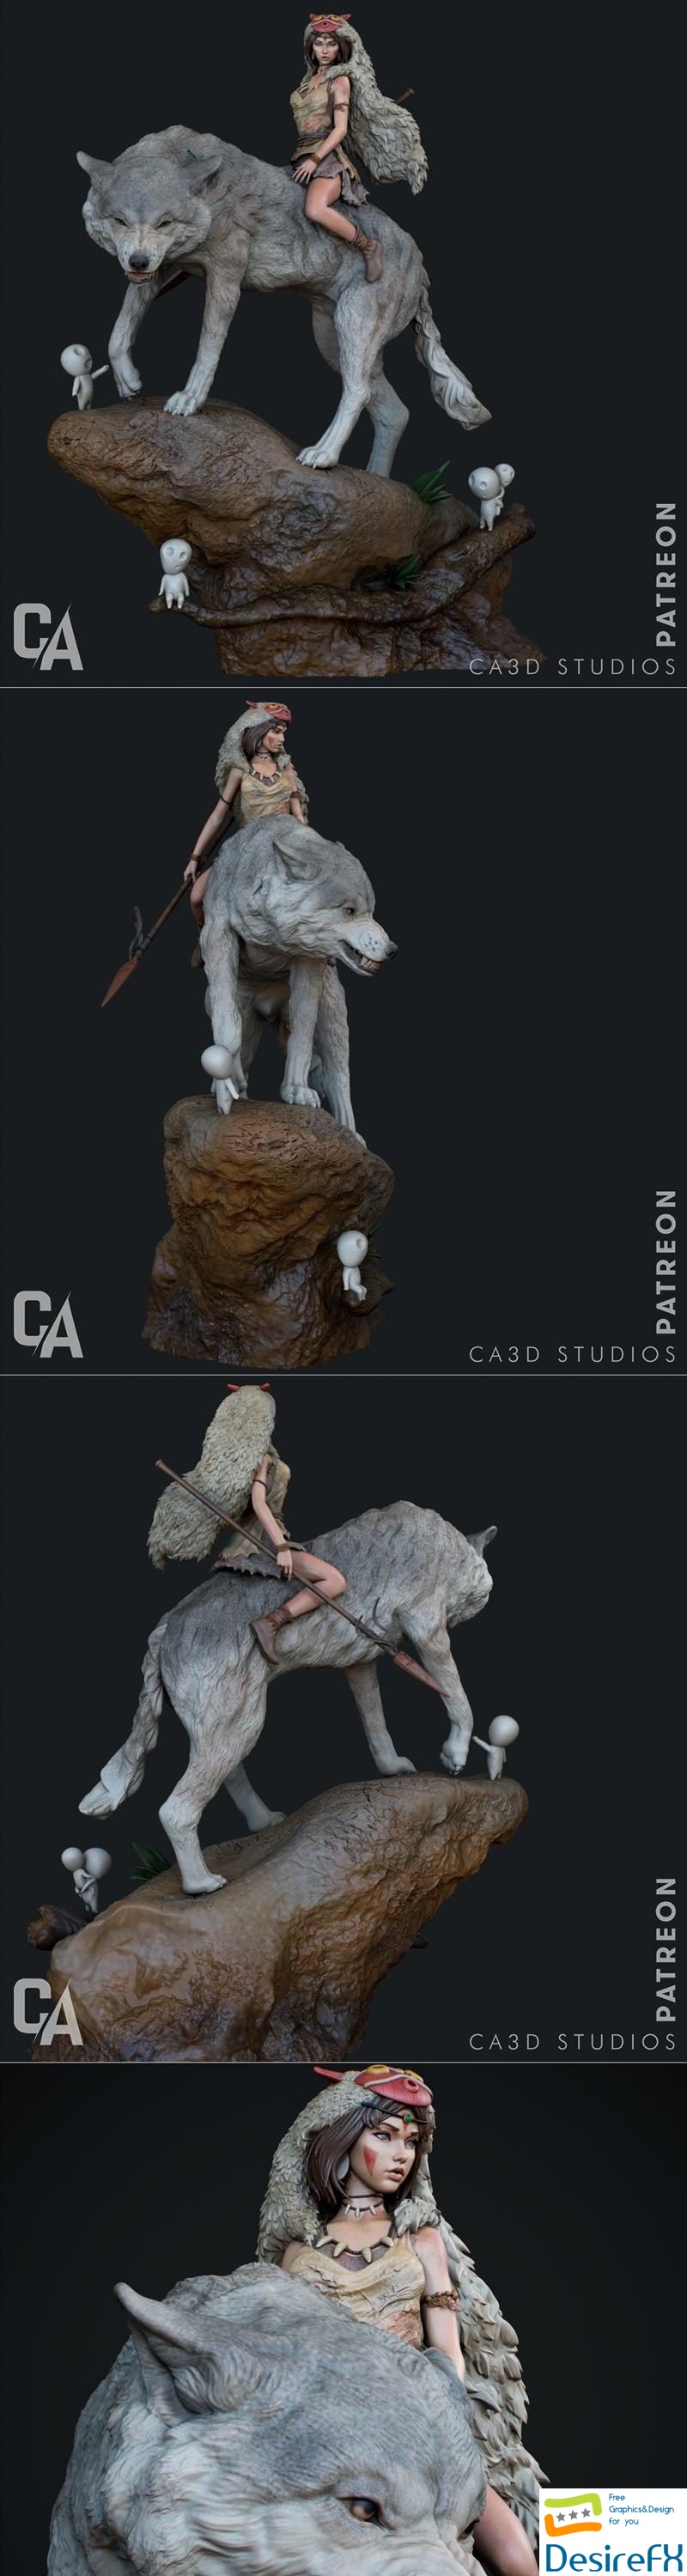 Ca 3d Studios - Princess Mononoke 3D Print